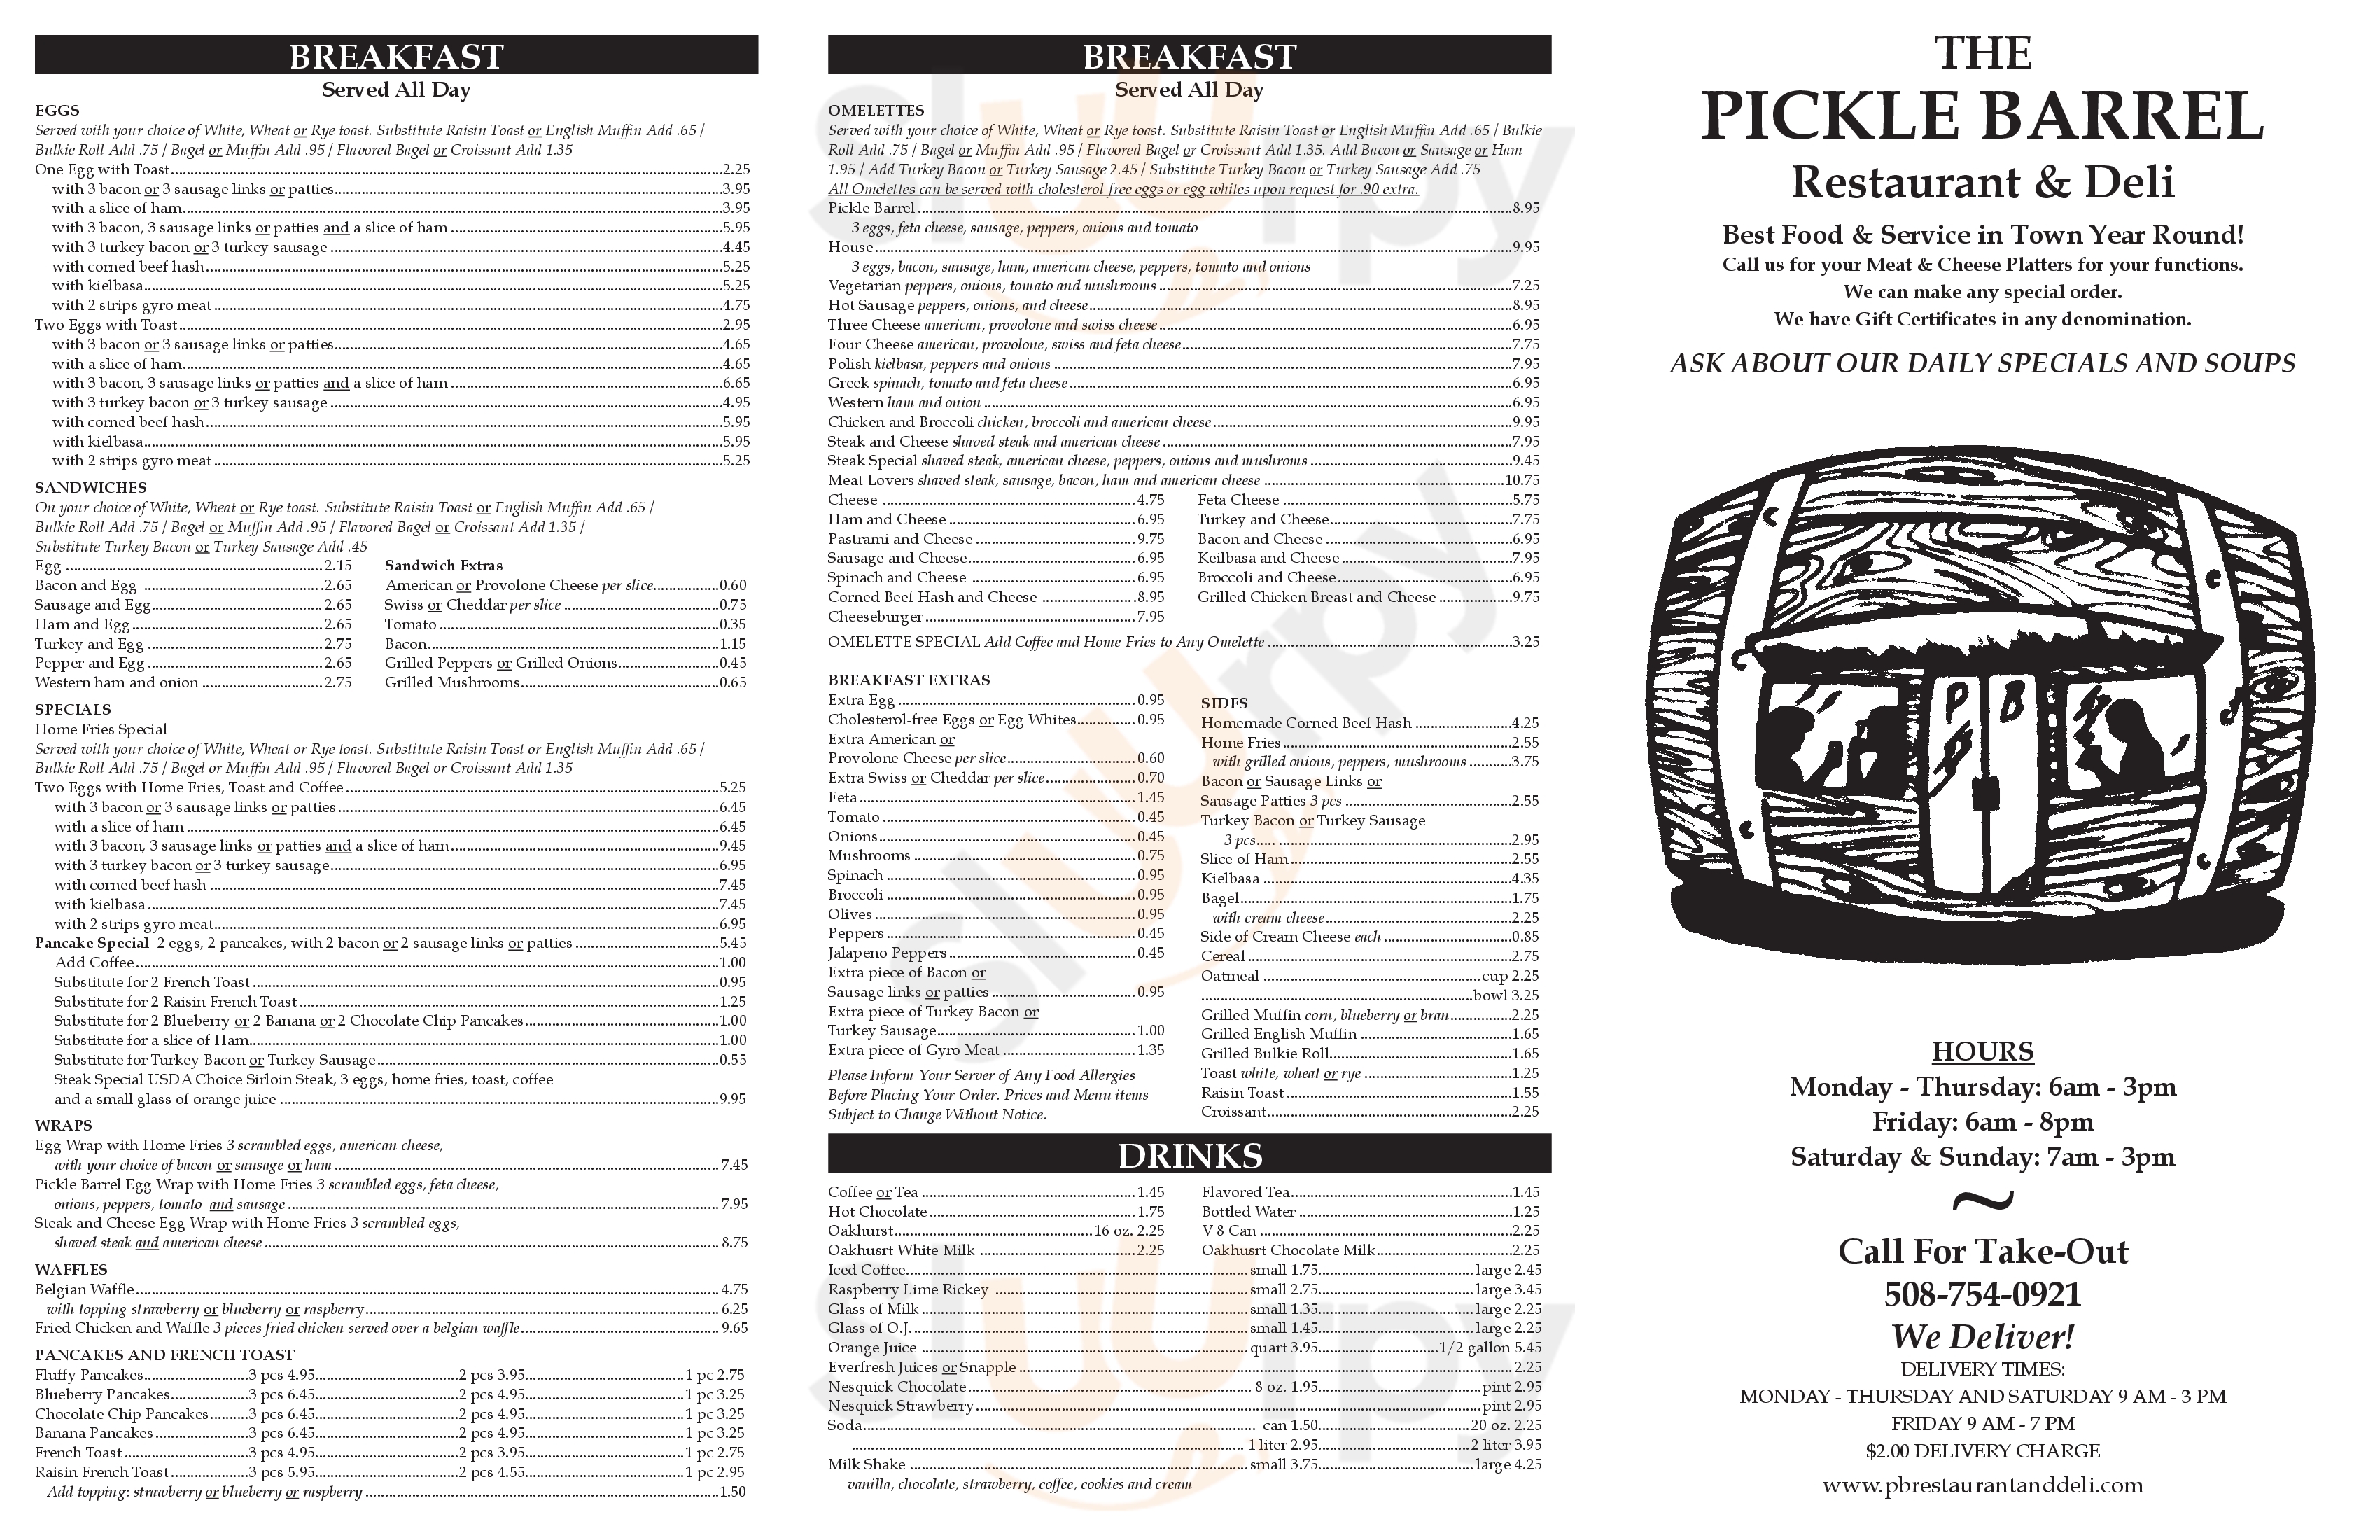 Pickle Barrel Restaurant And Deli Worcester Menu - 1